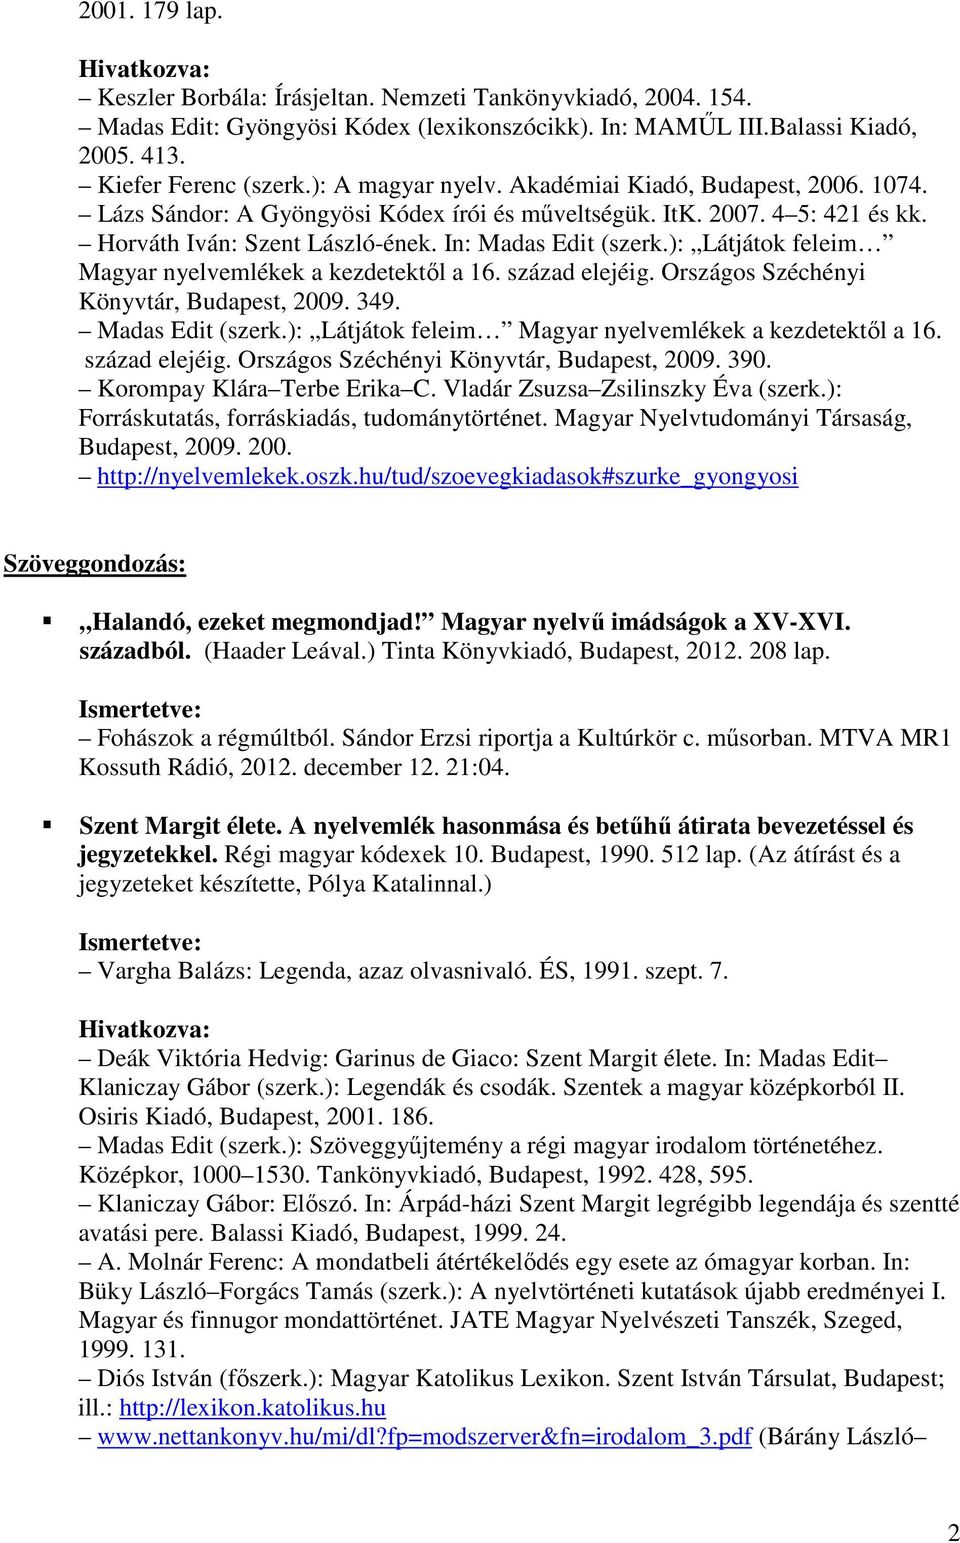 ): Látjátok feleim Magyar nyelvemlékek a kezdetektıl a 16. század elejéig. Országos Széchényi Könyvtár, Budapest, 2009. 349. Madas Edit (szerk.